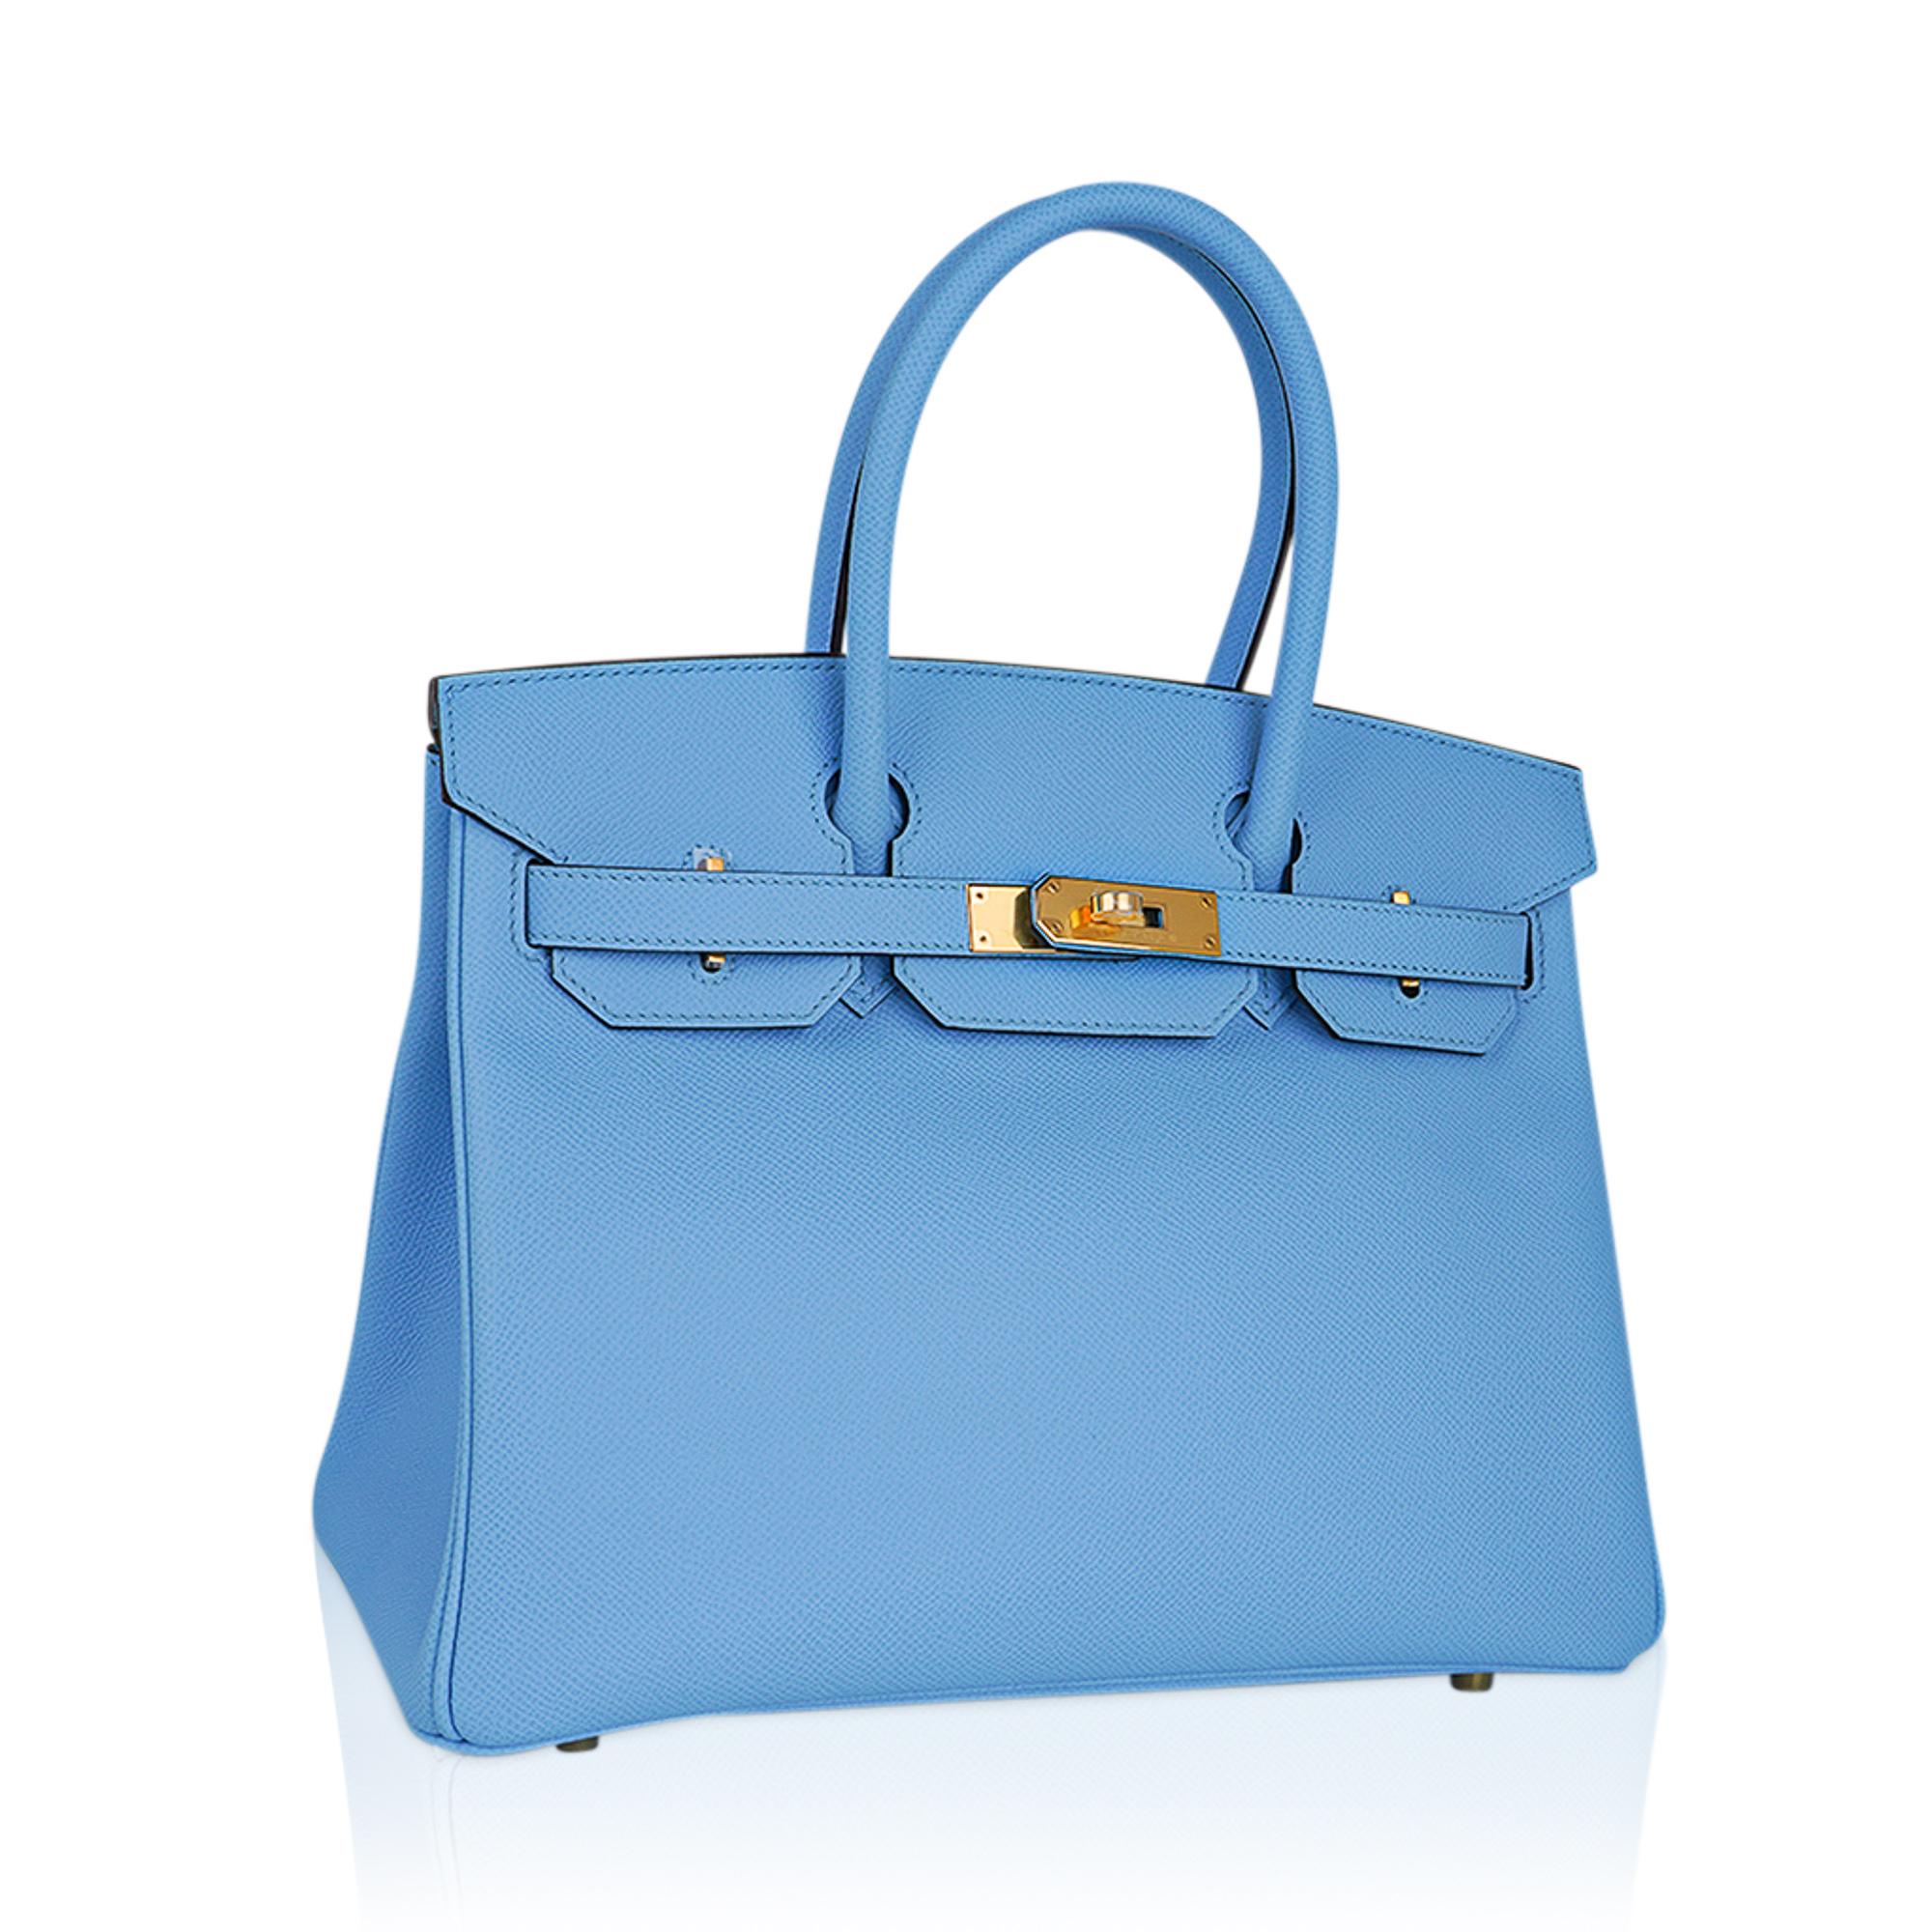 Mightychic propose un sac Hermes Birkin 30 dans le coloris rare Blue Celeste.
Ce magnifique sac Birkin bleu ciel est rehaussé de ferrures dorées.
Neutre et aussi éblouissante en hiver qu'en été.
Le cuir d'Epsom qui donne une riche saturation à la